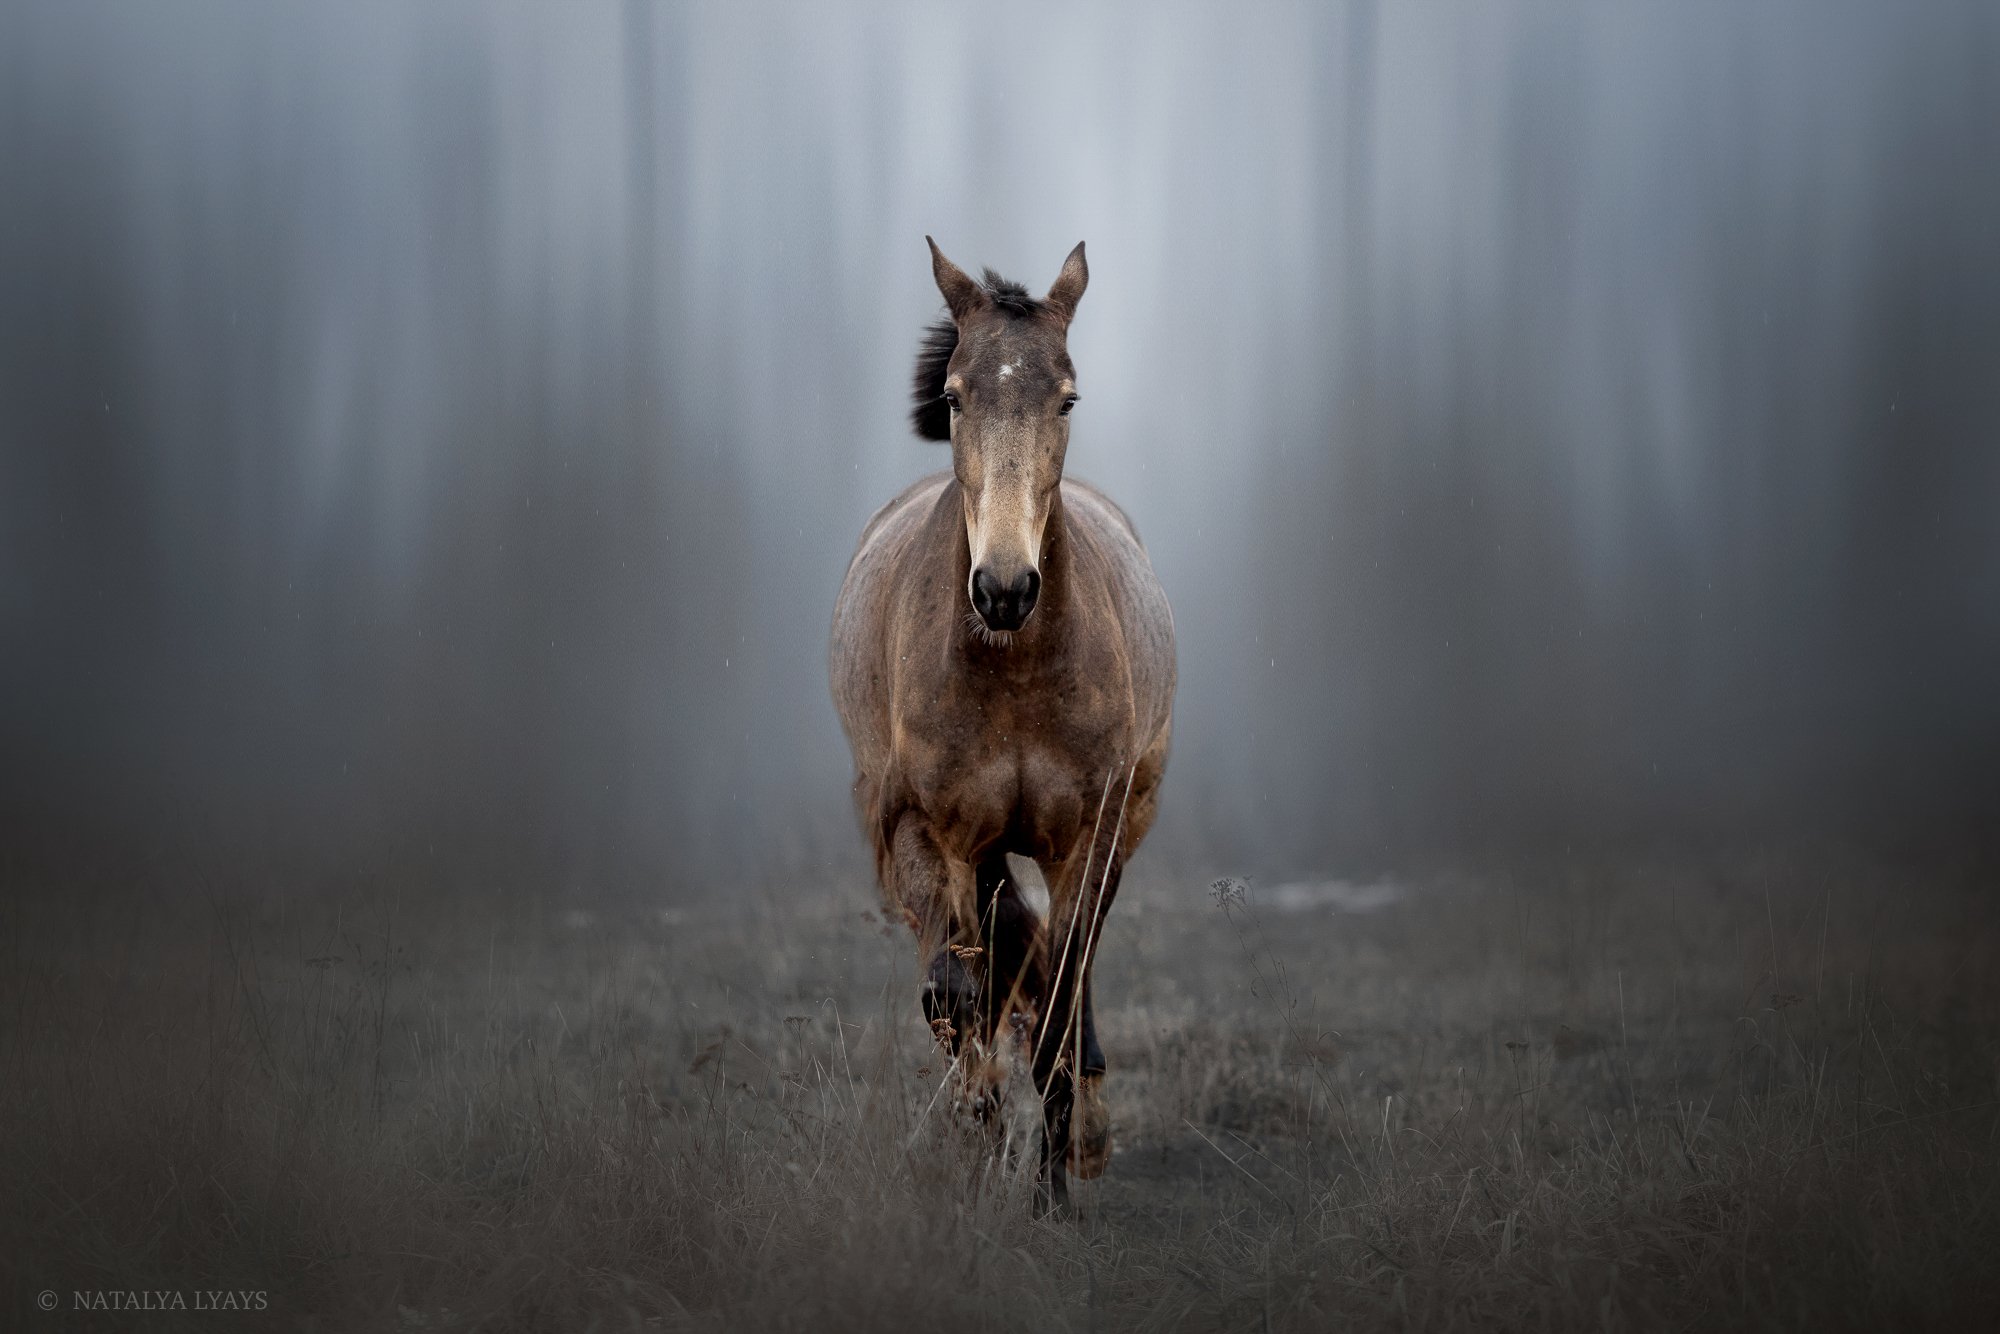 животные, фотограф анималист, лошадь, туман, в тумане, природа, лес, конь, фото дня, наталья ляйс, horse, animal, forrest, fog, no people, Наталья Ляйс